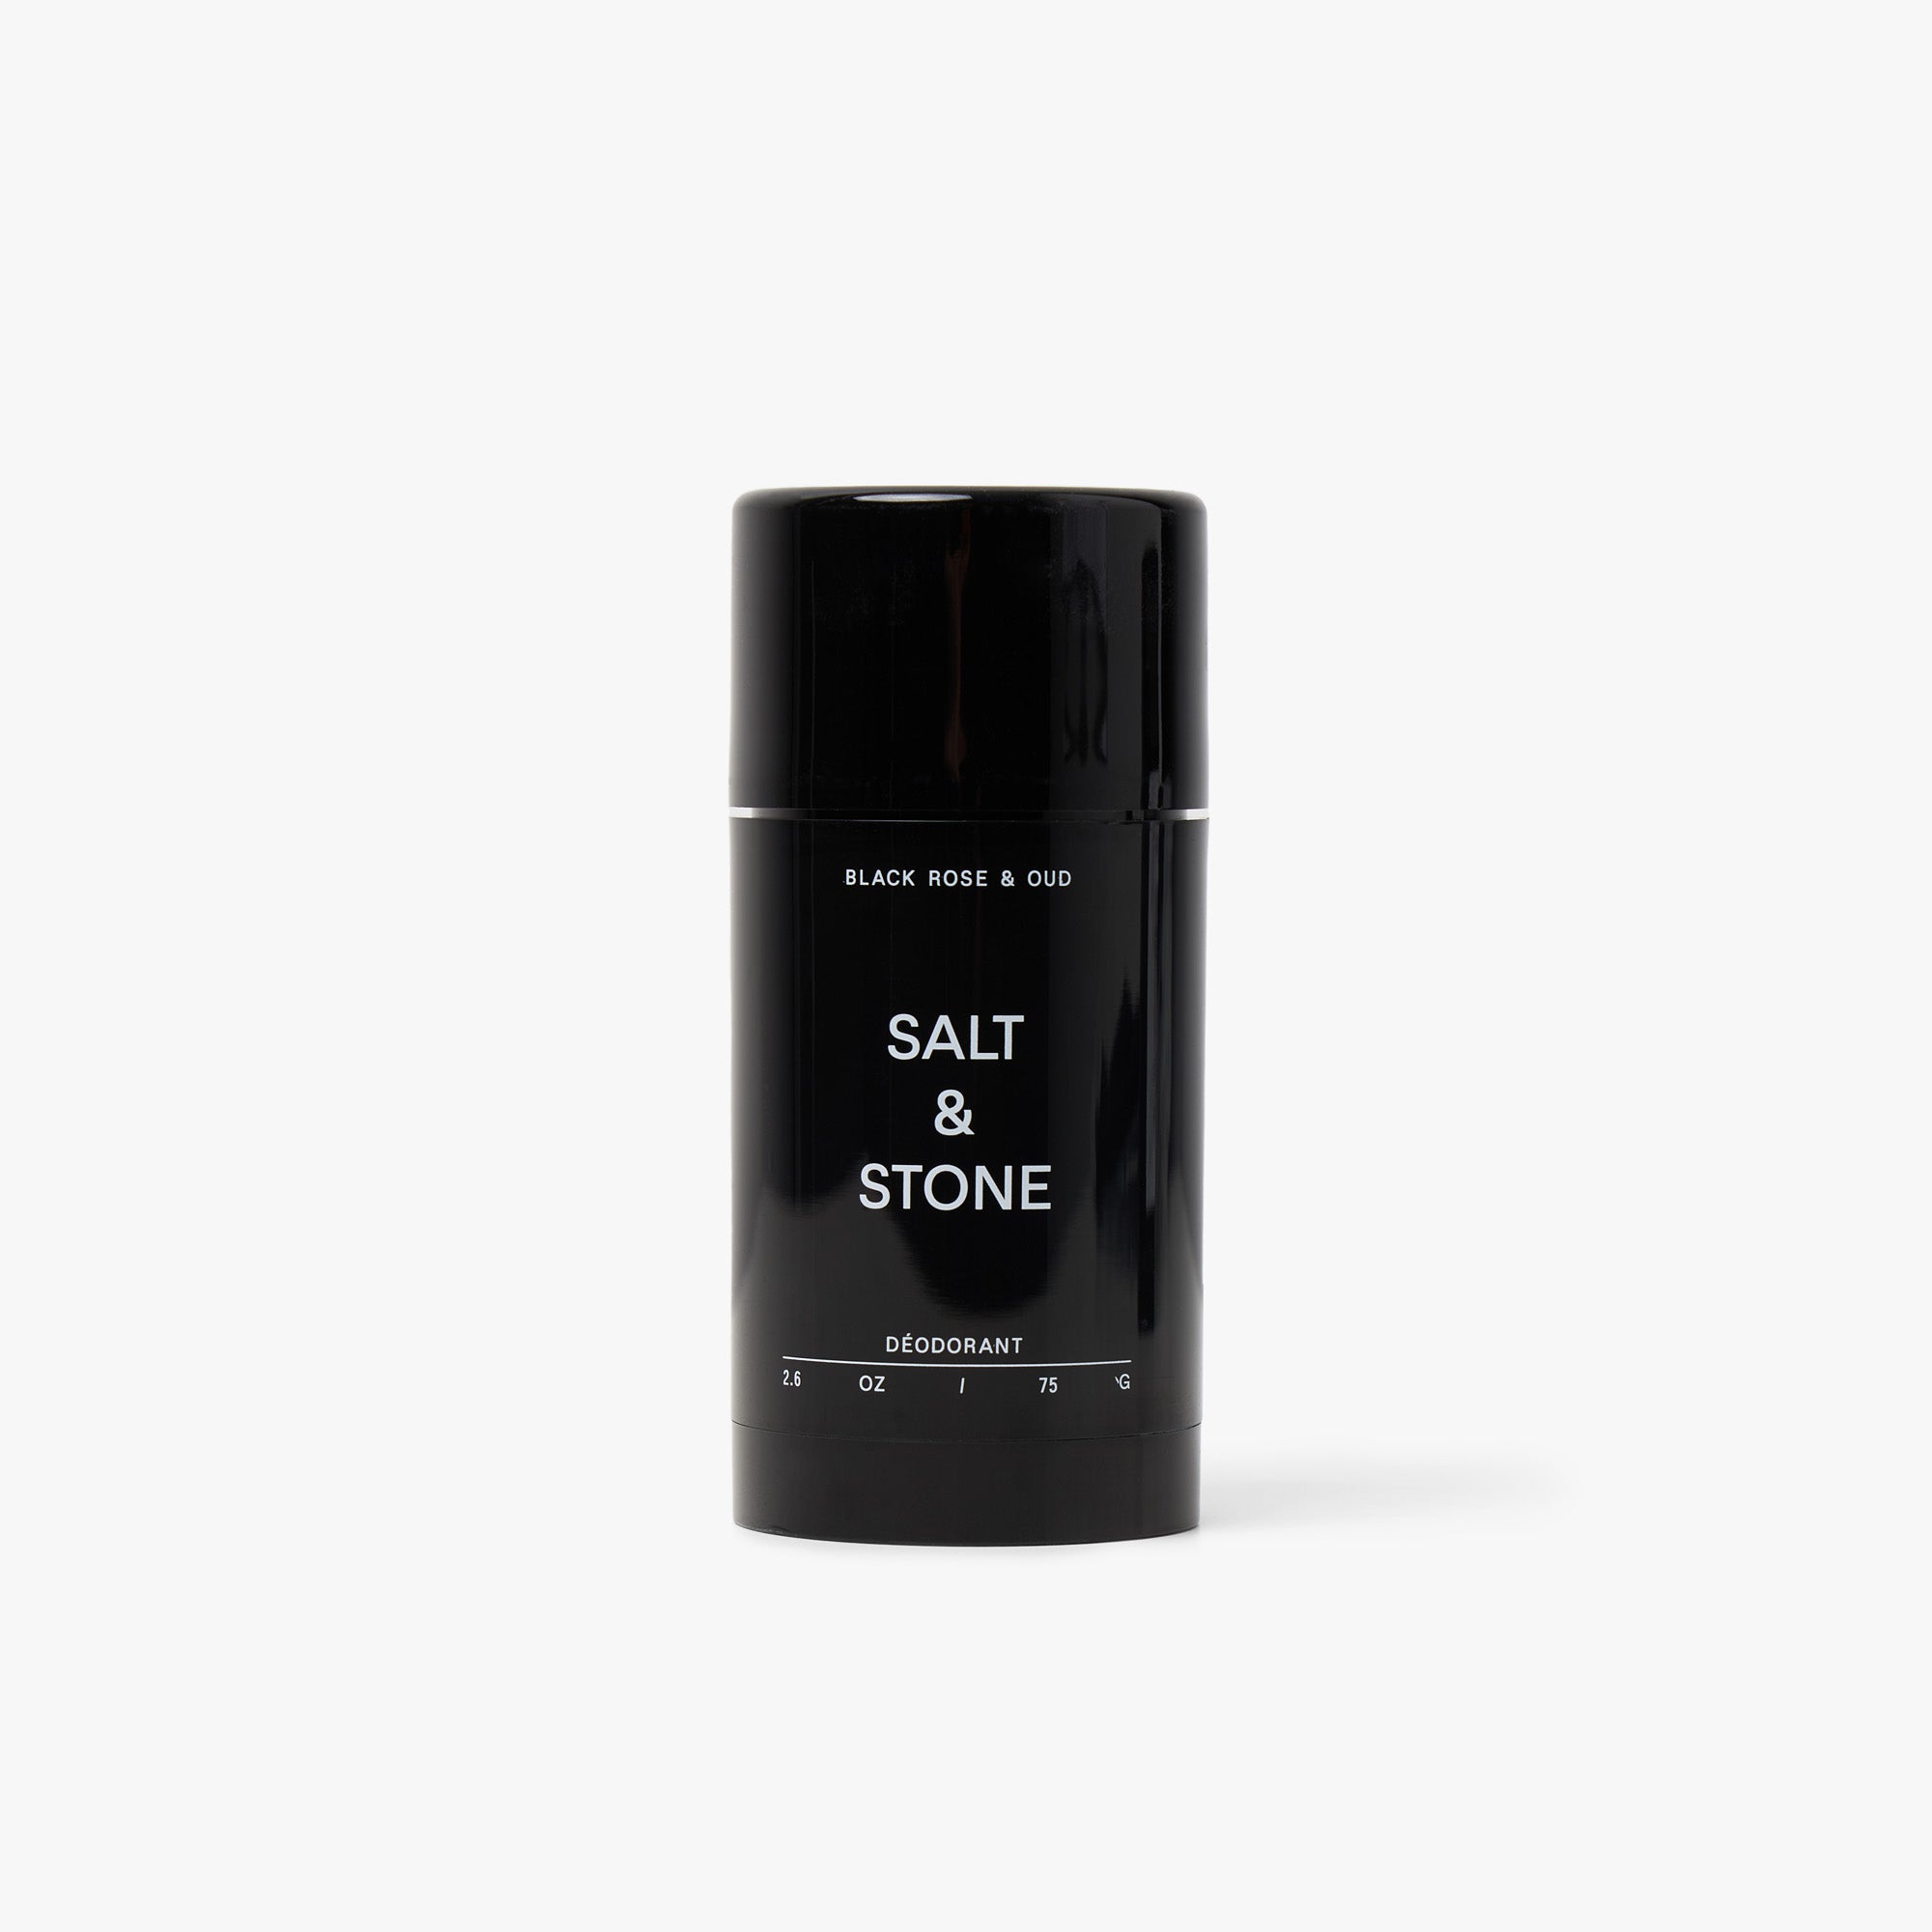 SALT & STONE Natural Deodorant / Black Rose & Oud 1